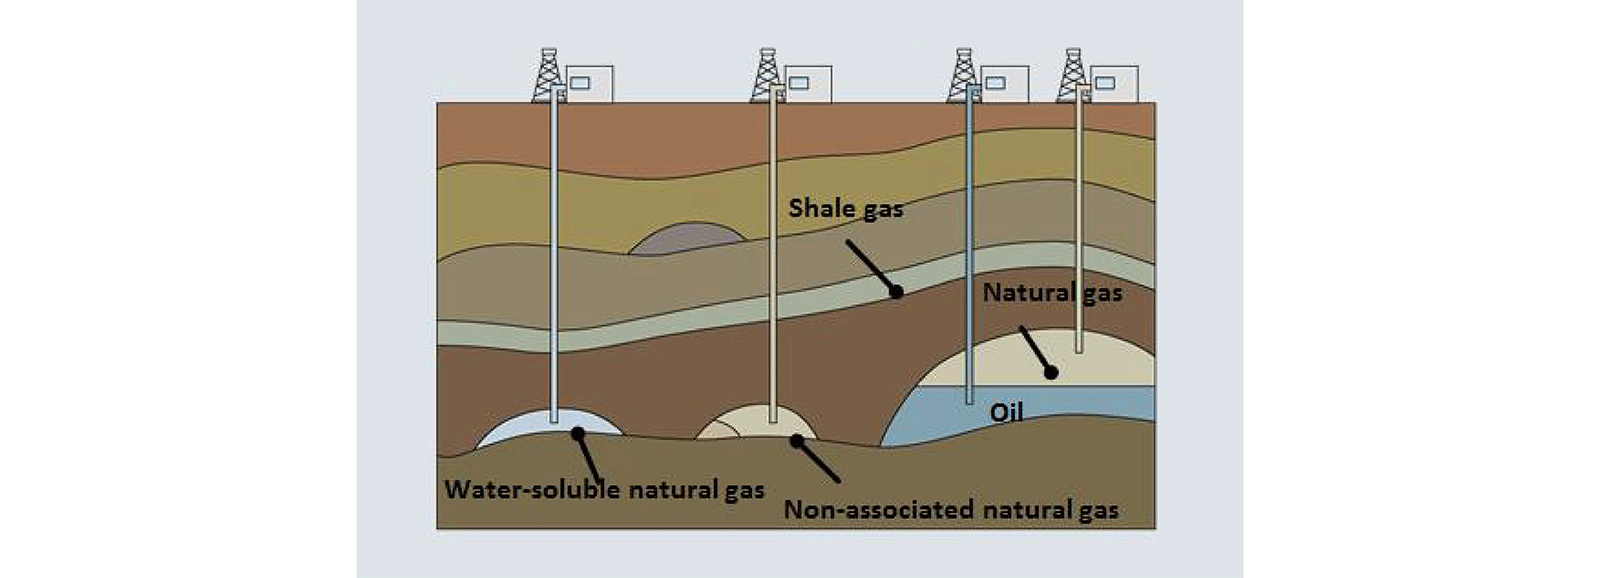 Förderung von konventionellem Erdgas